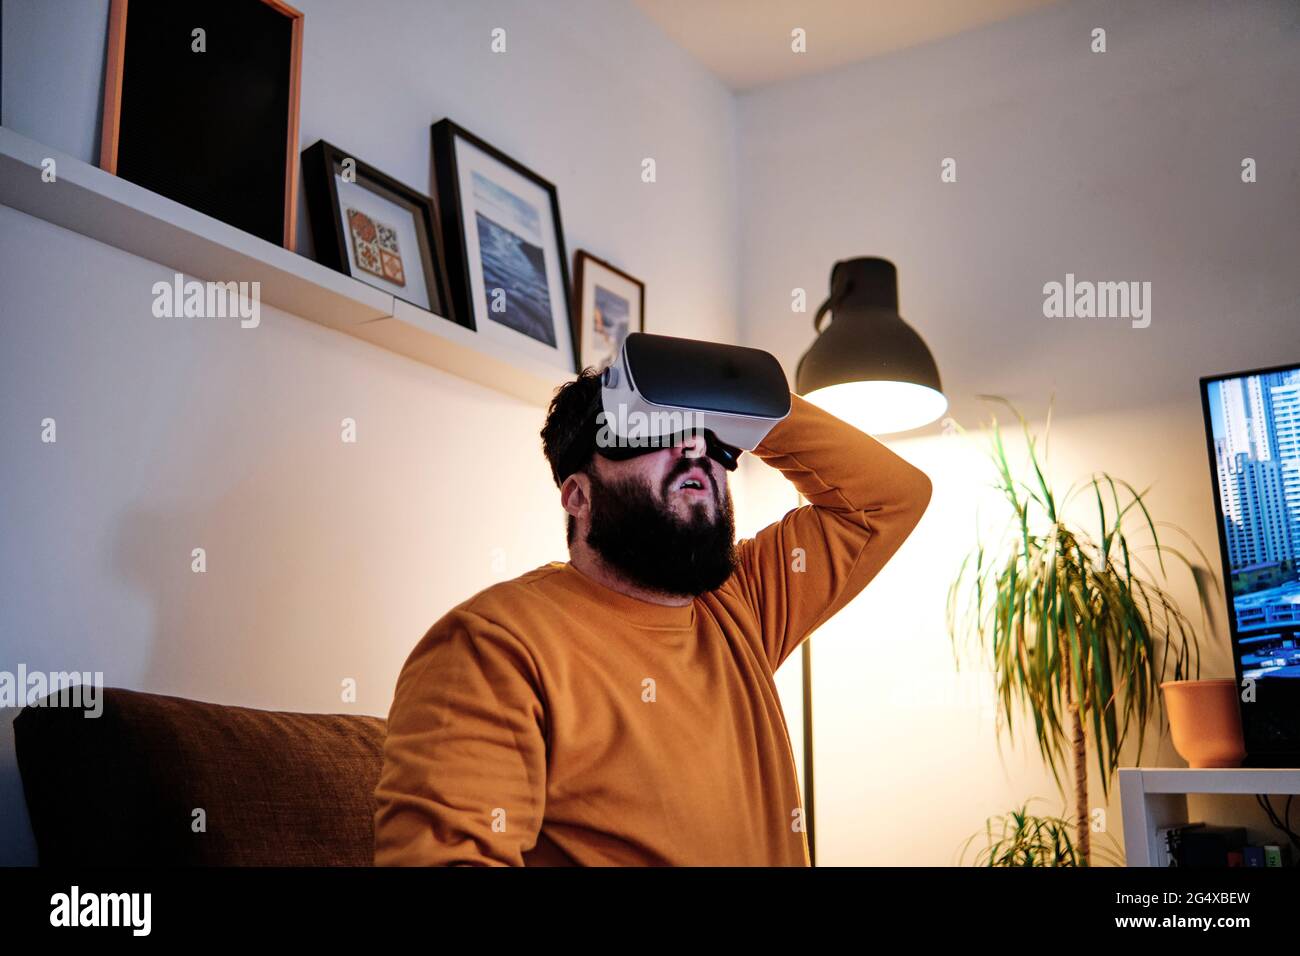 Matured man using virtual reality simulator at home Stock Photo